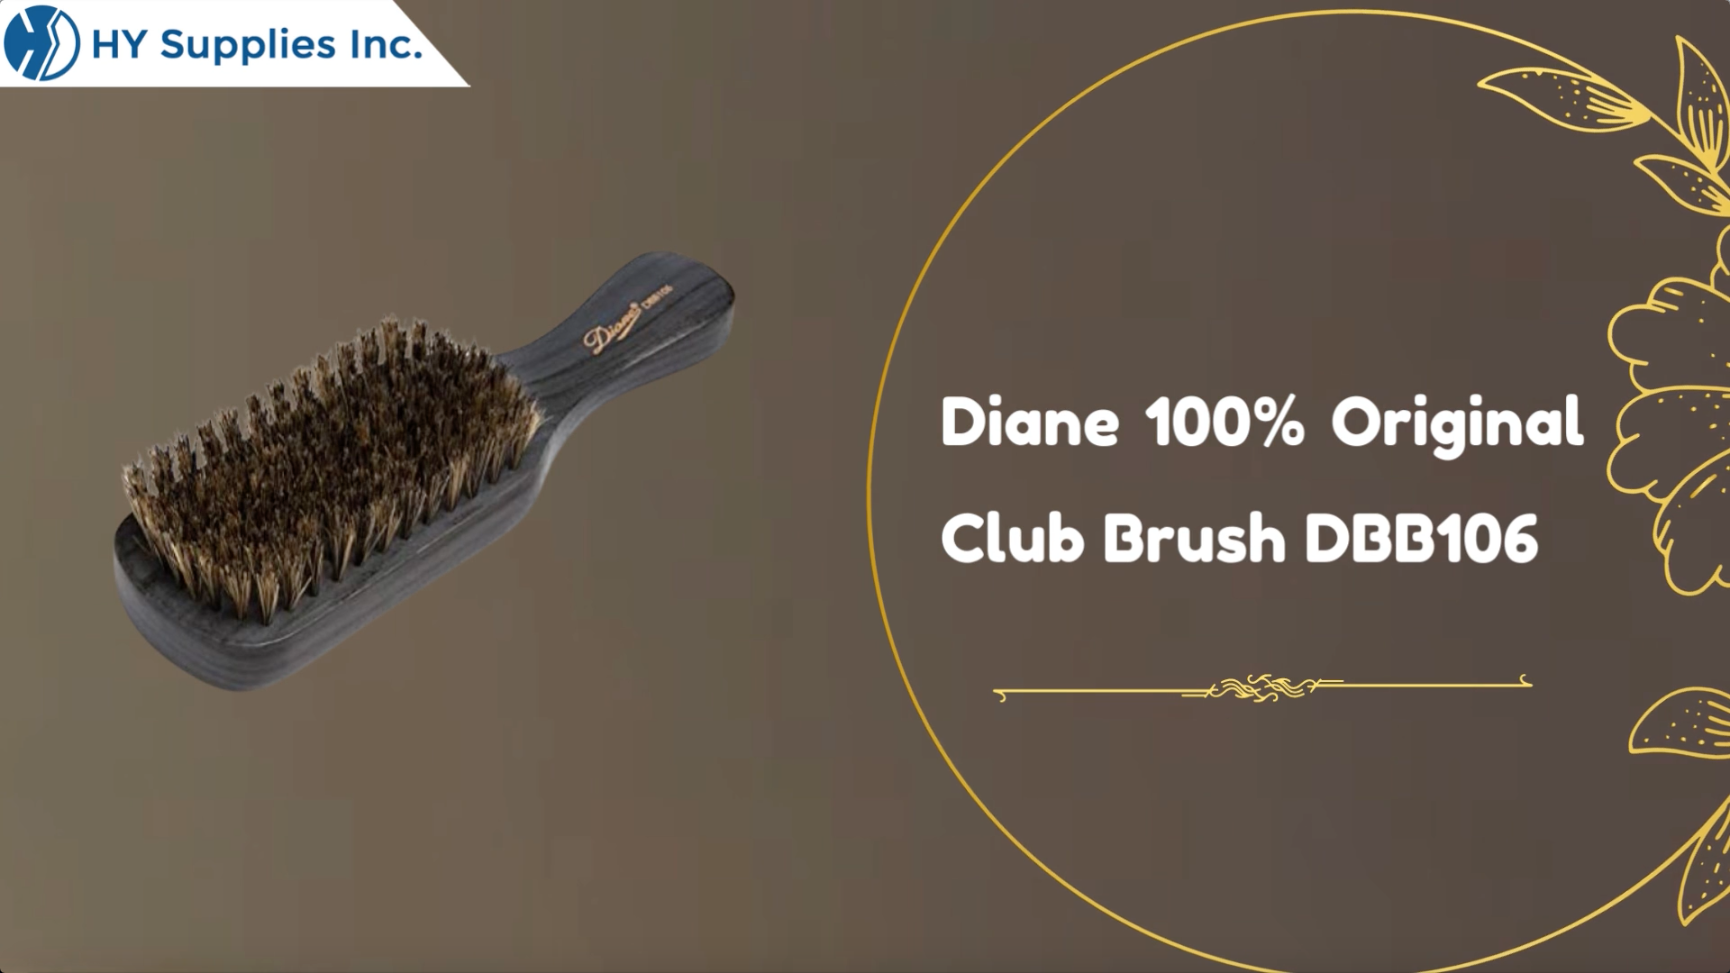 Diane 100% Original Club Brush DBB106